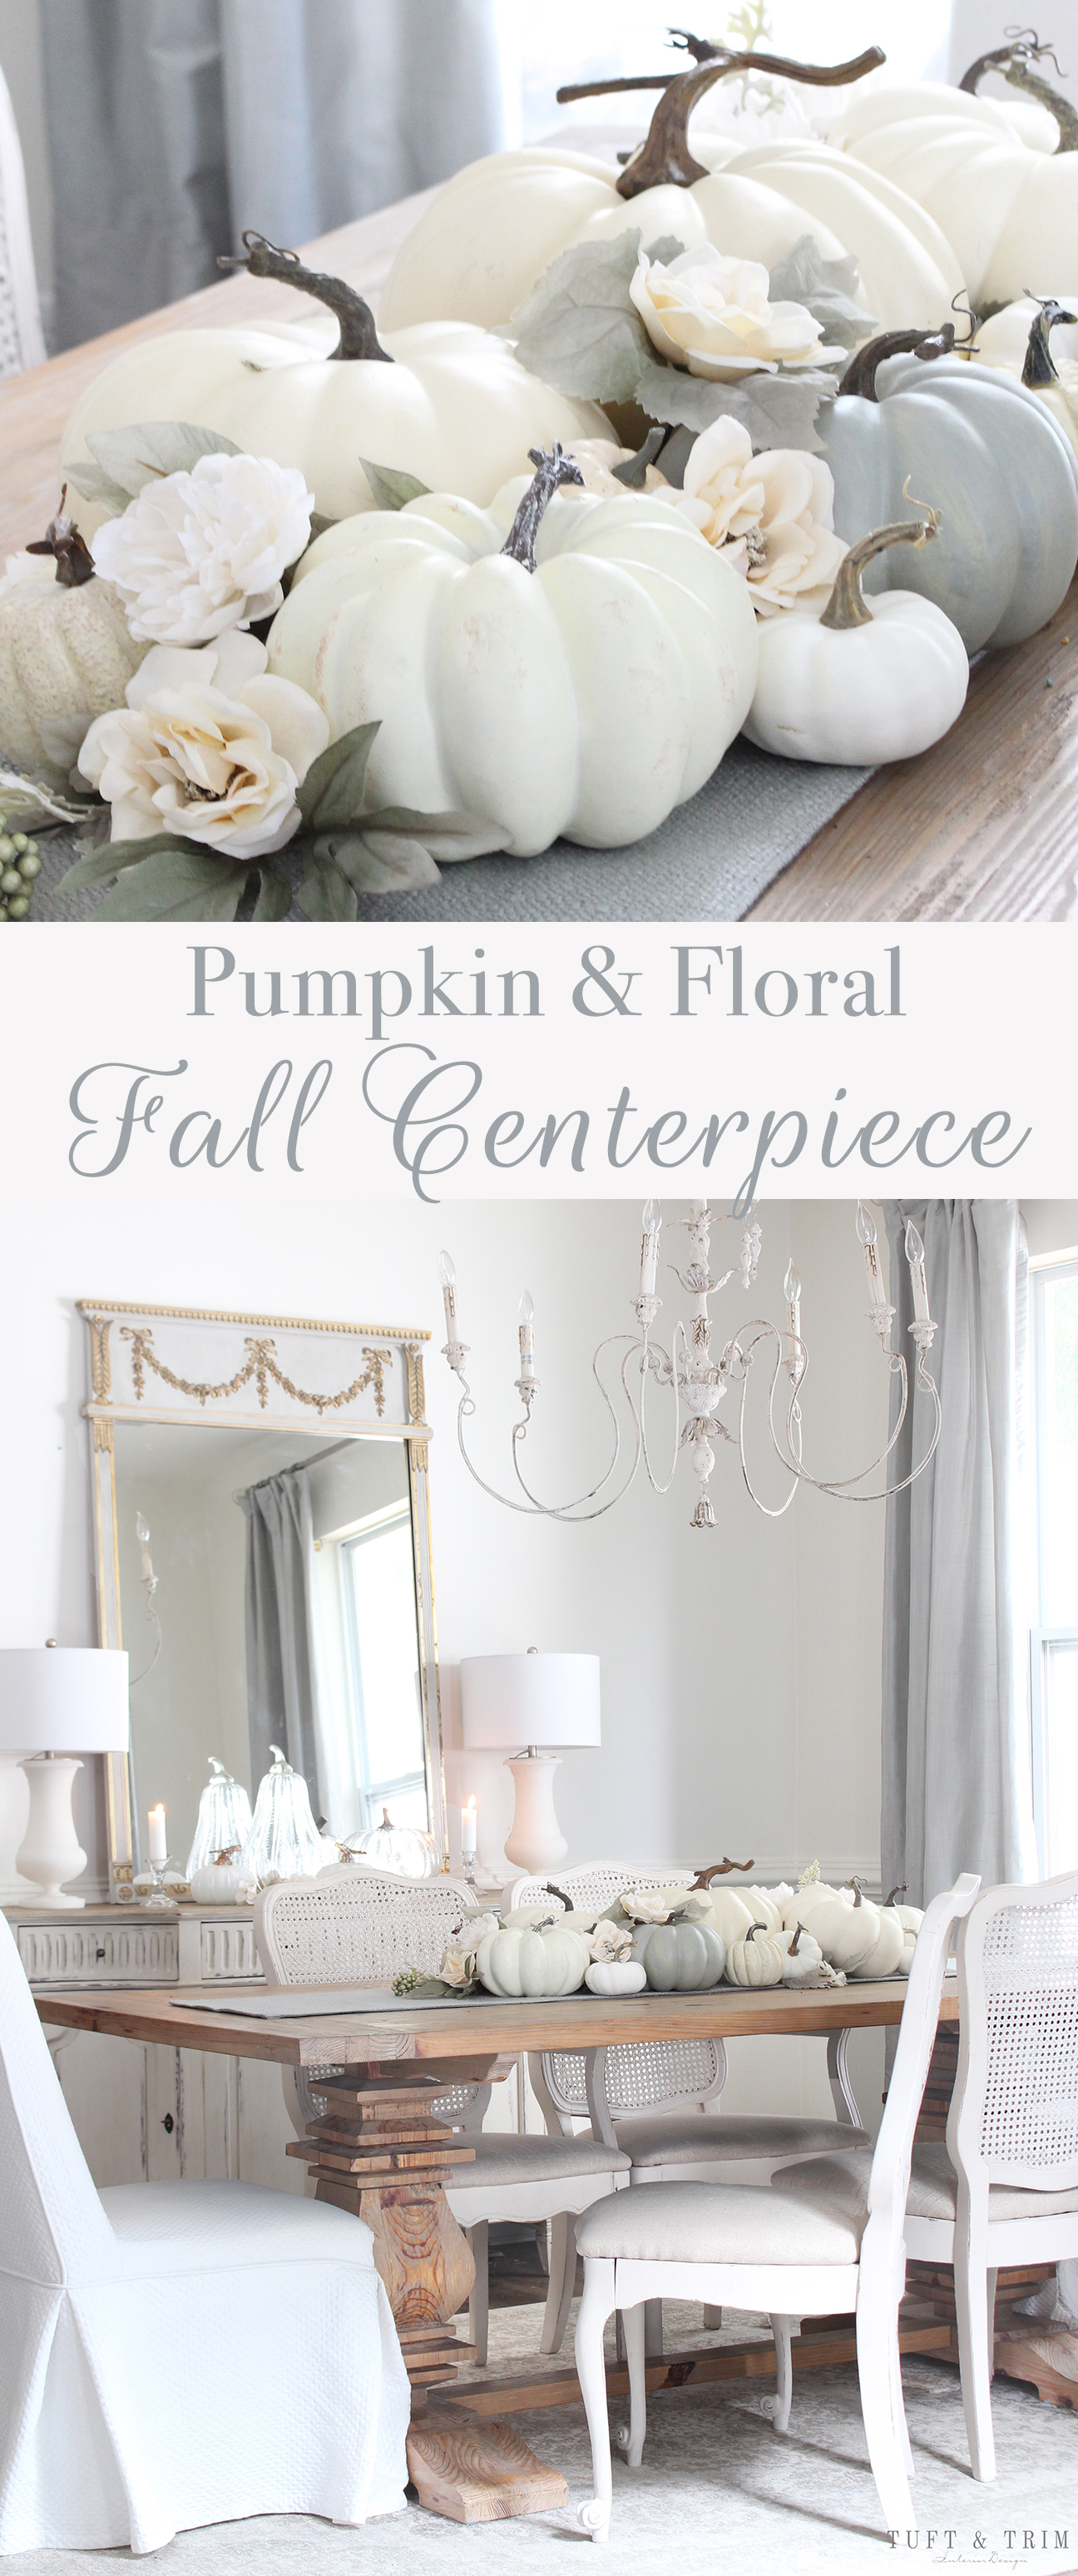 Neutral Pumpkin & Floral Fall Centerpiece - Tuft & Trim